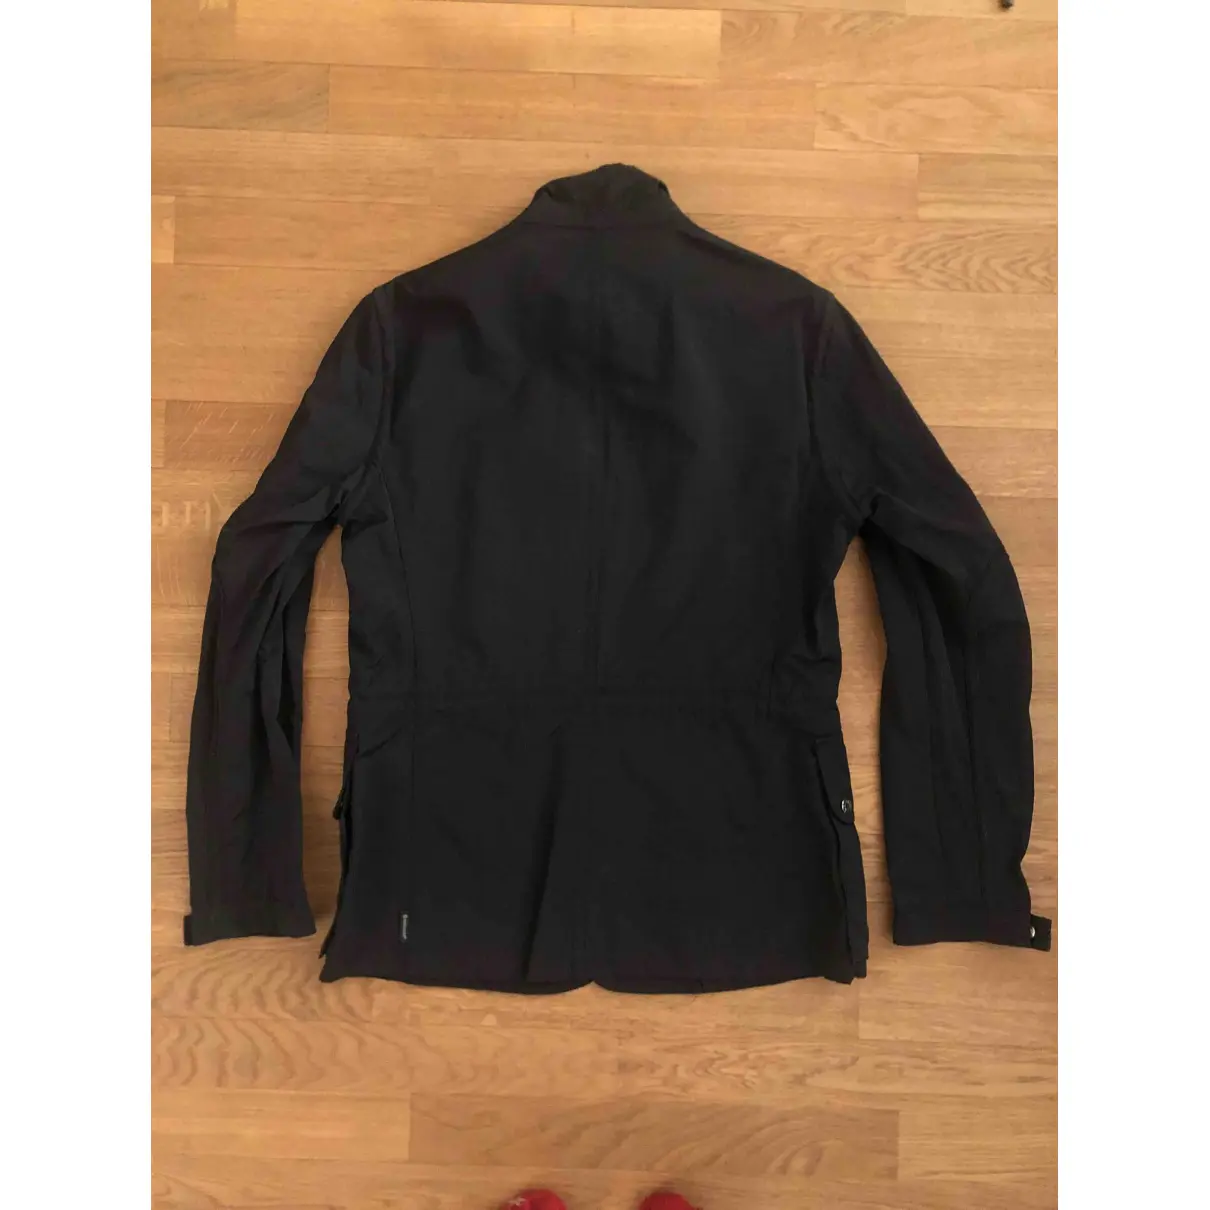 Buy Moncler Jacket online